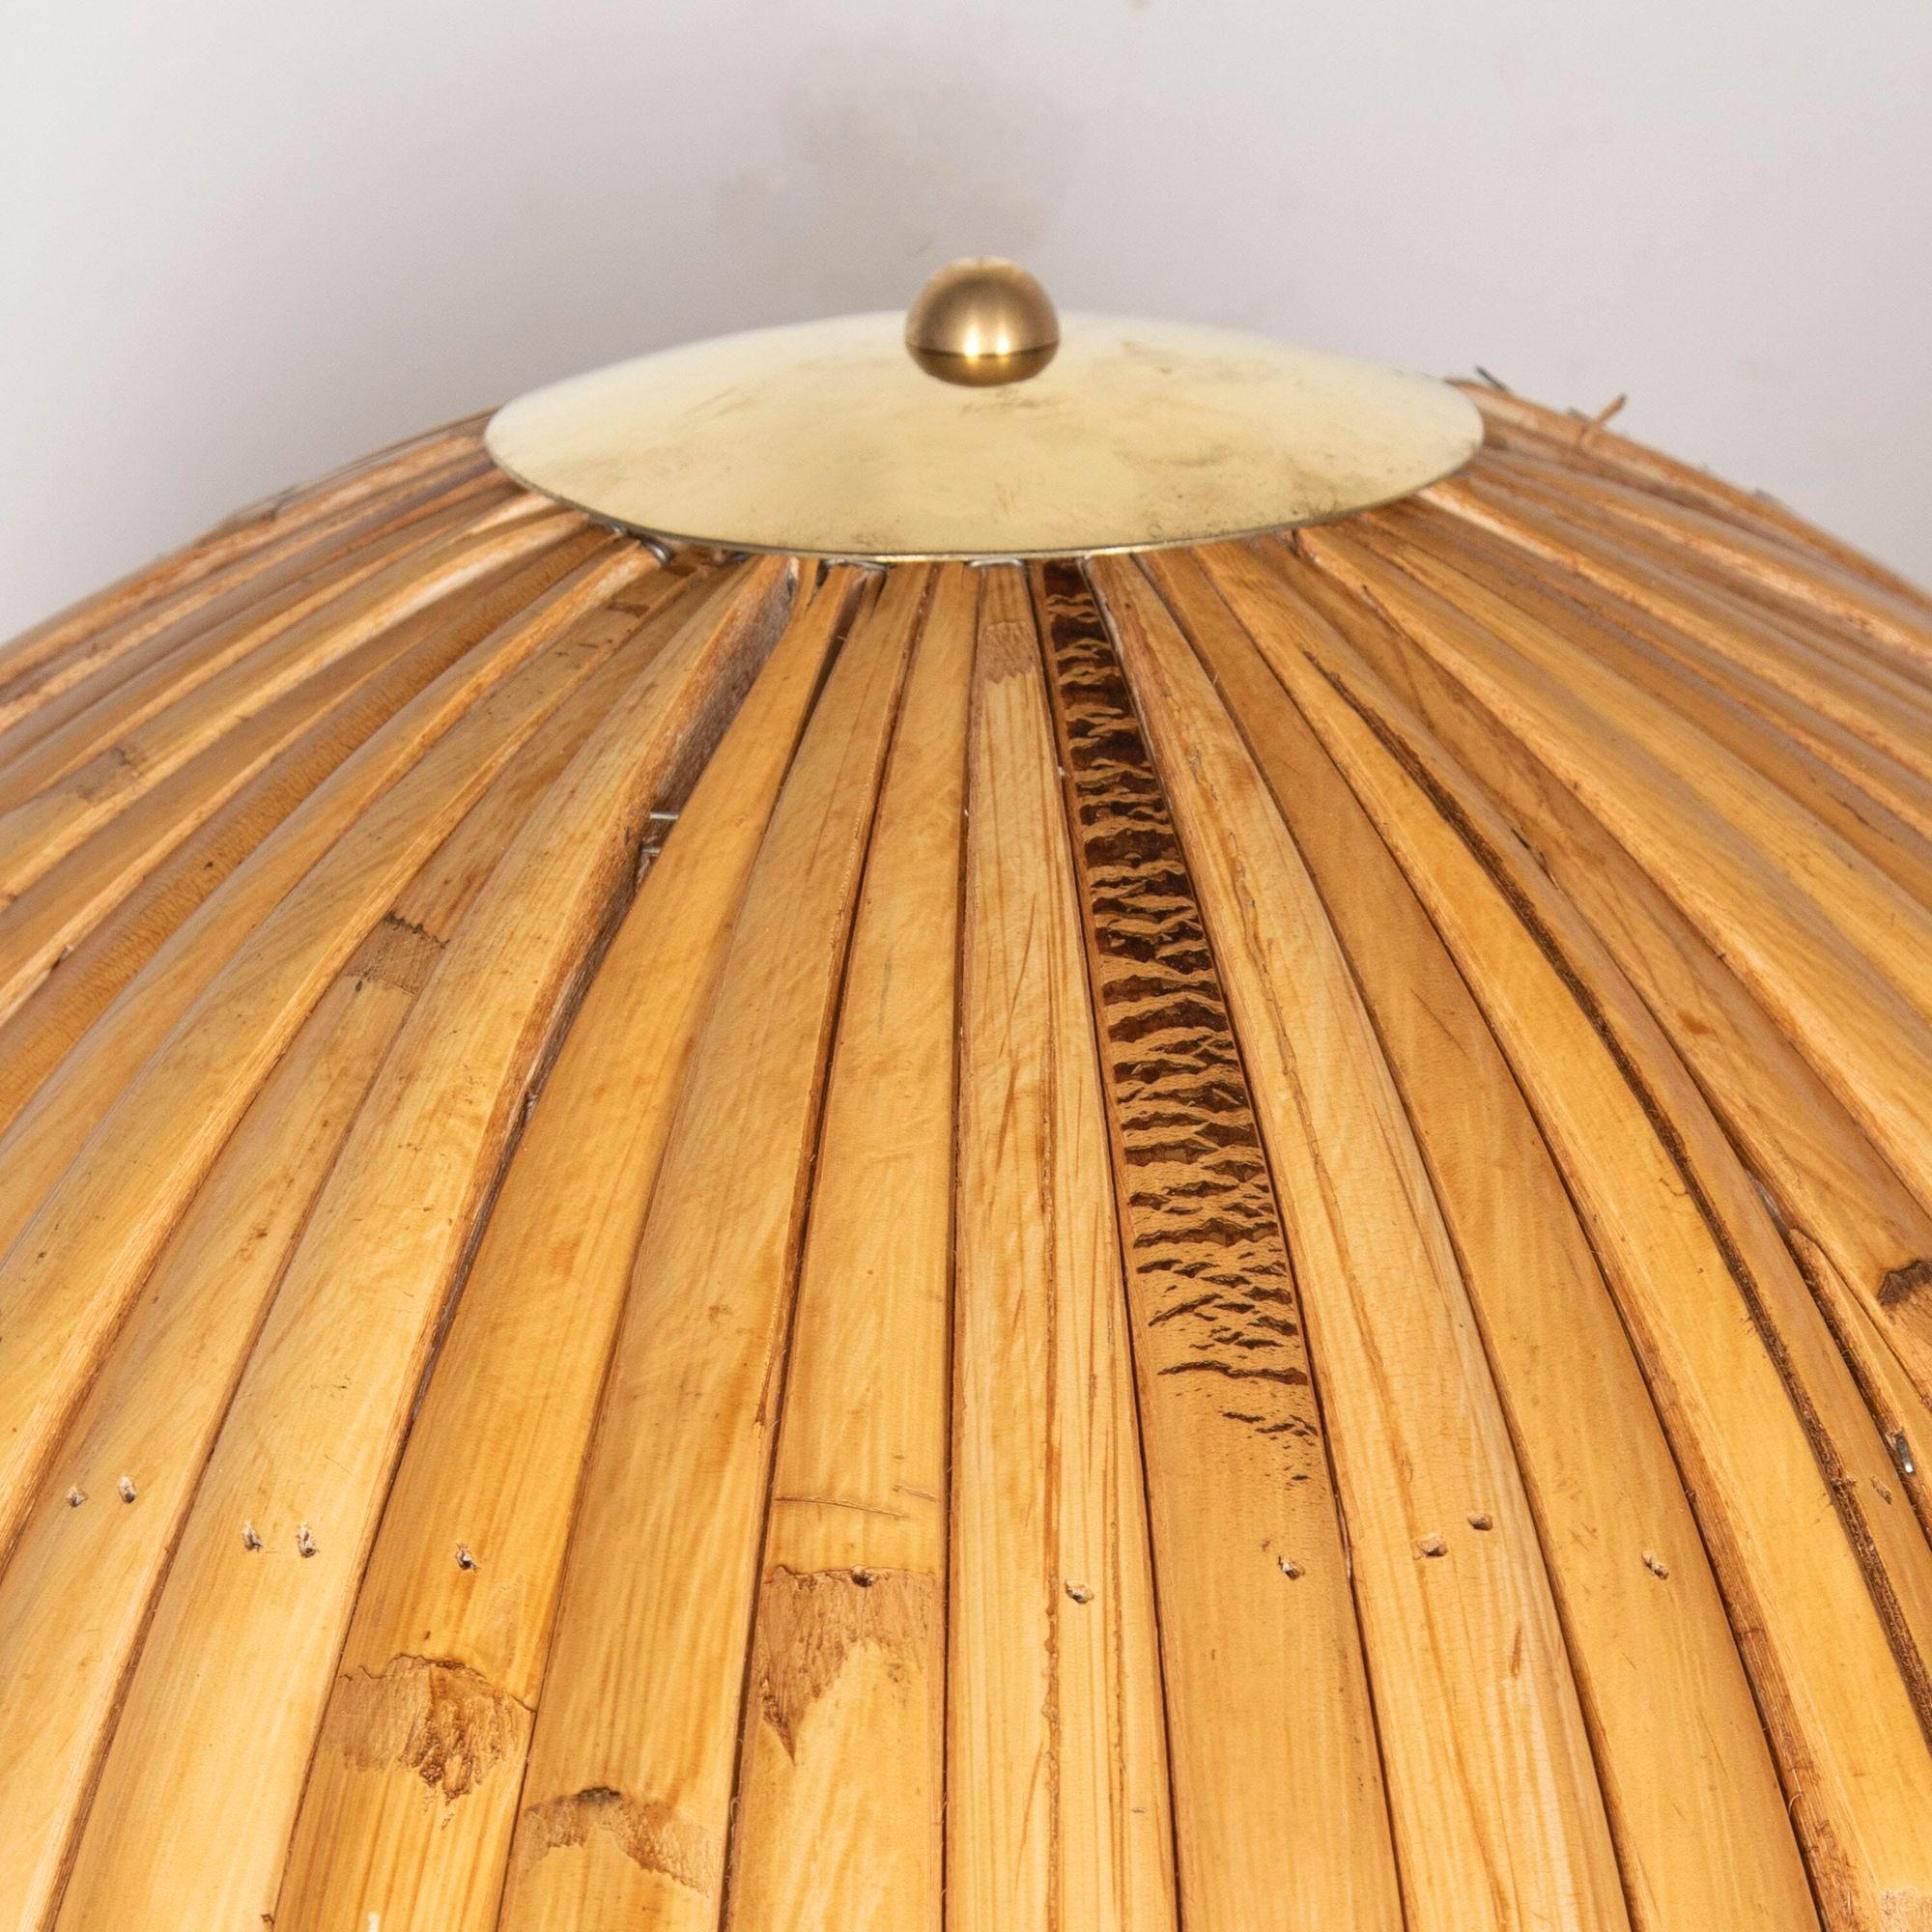 Großes Paar beeindruckender Bambus-Tischlampen im Mid Century Vivai lel Sud-Stil.
Perfekt für einen Konsolentisch oder ein Sideboard.
Bitte beachten Sie, dass diese Lampen derzeit unser Prüfverfahren durchlaufen und derzeit keine gültige PAT-Prüfung